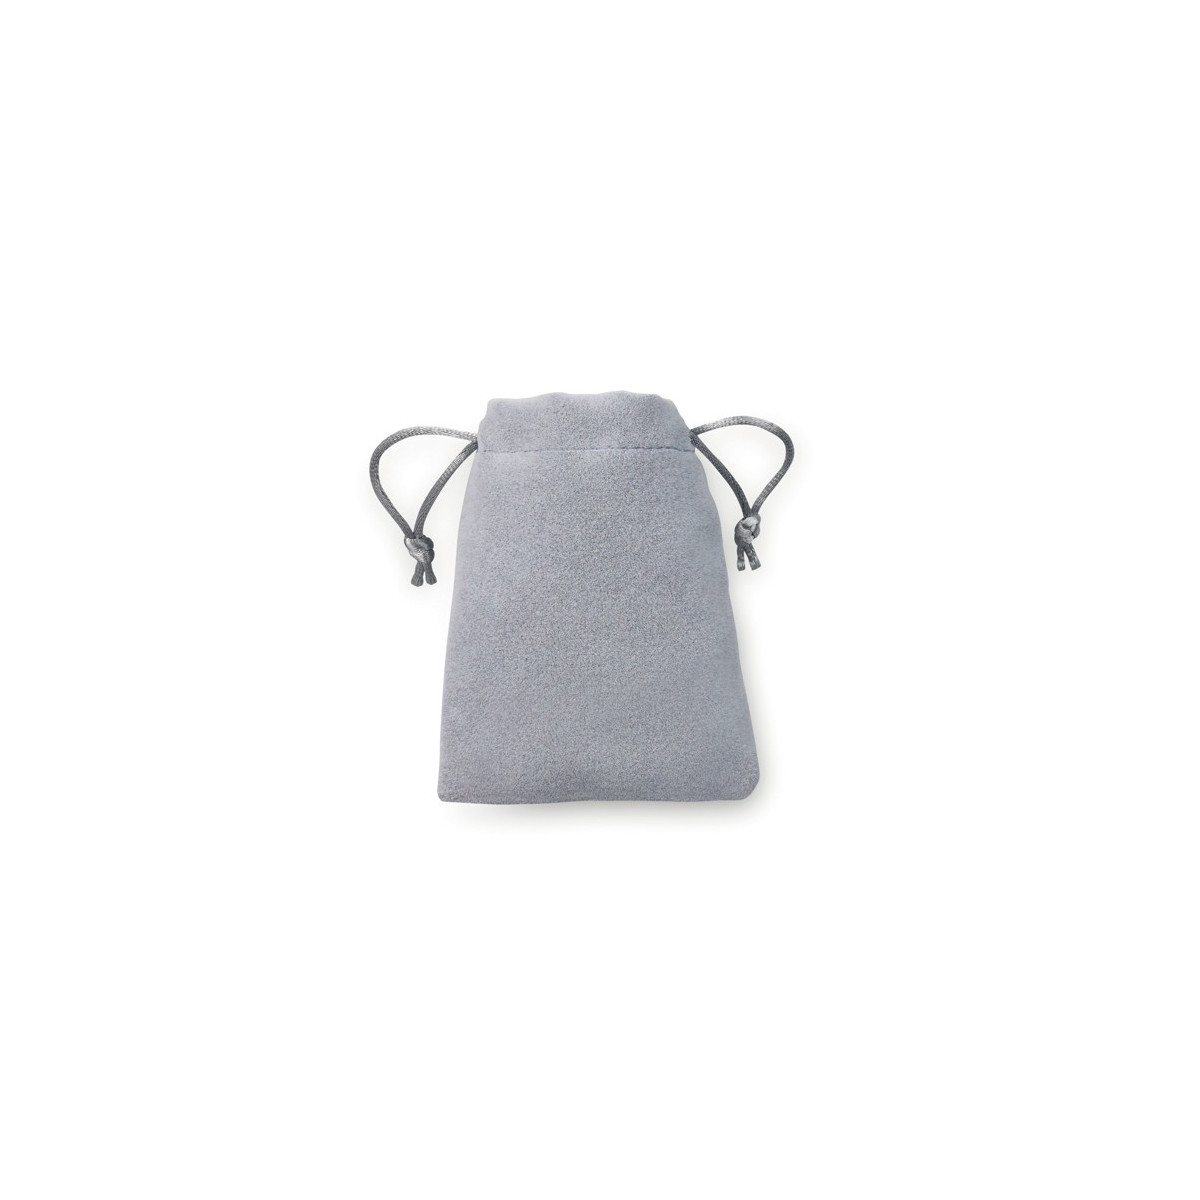 Bolsa antelina joyería en color gris plata con cordón de cierre